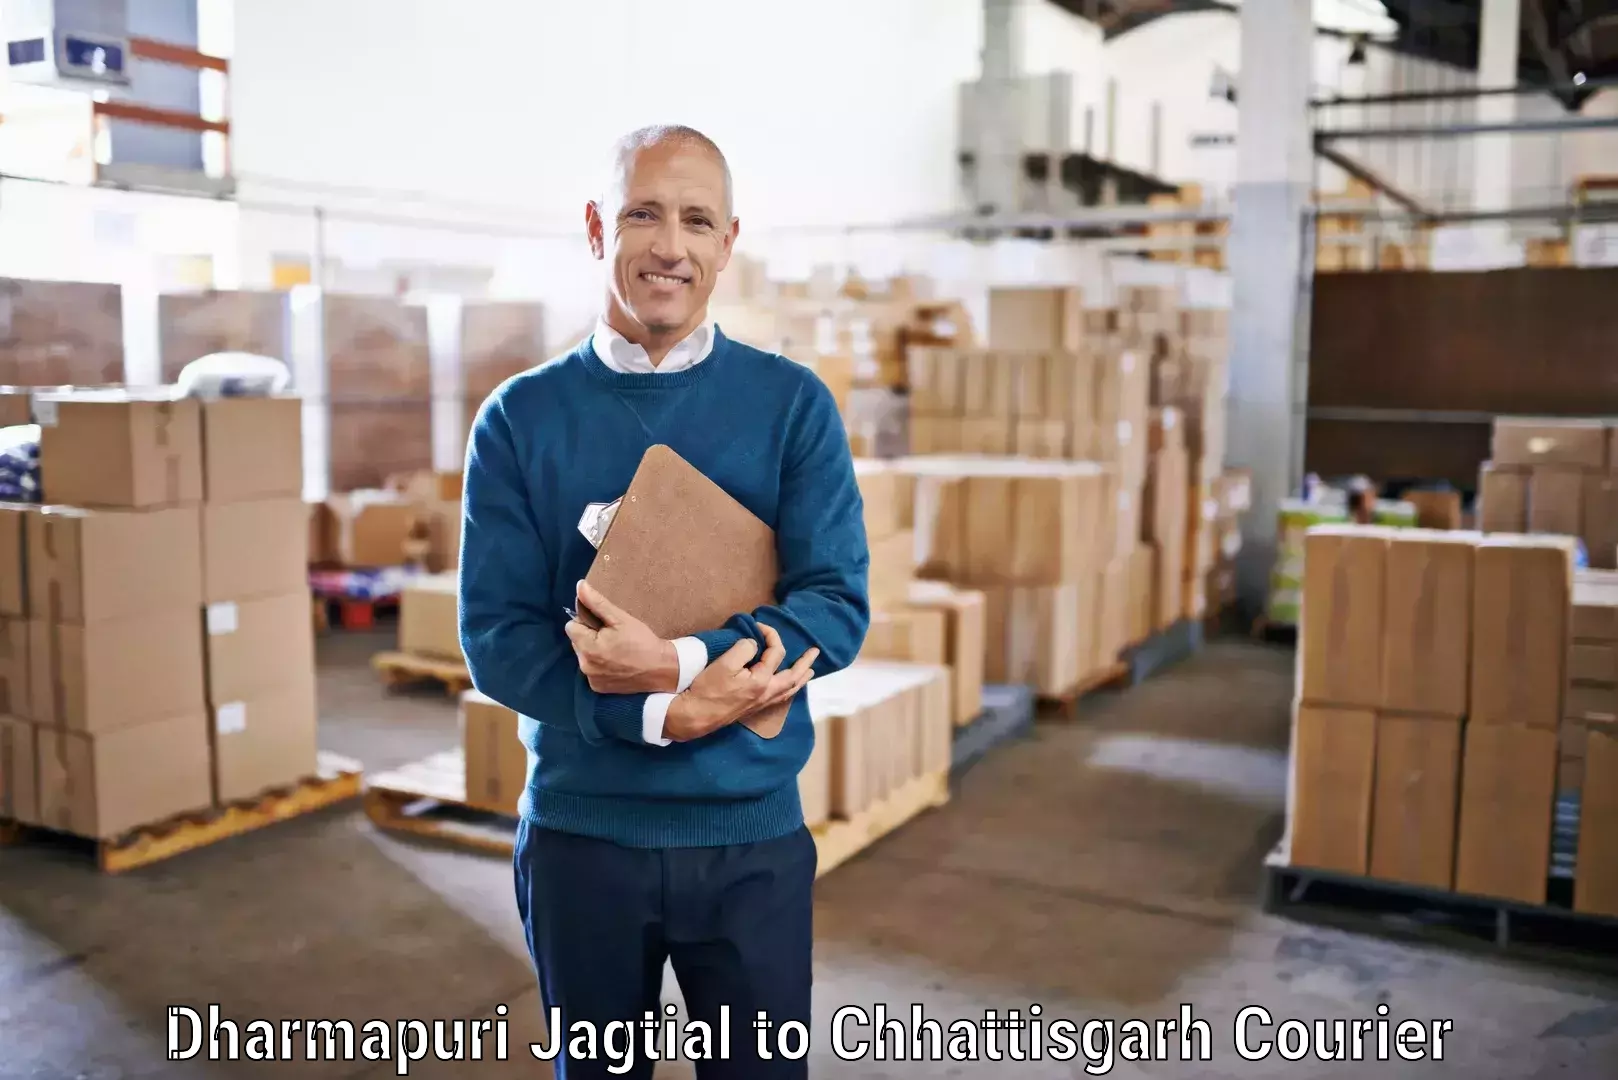 Delivery service partnership in Dharmapuri Jagtial to Pakhanjur